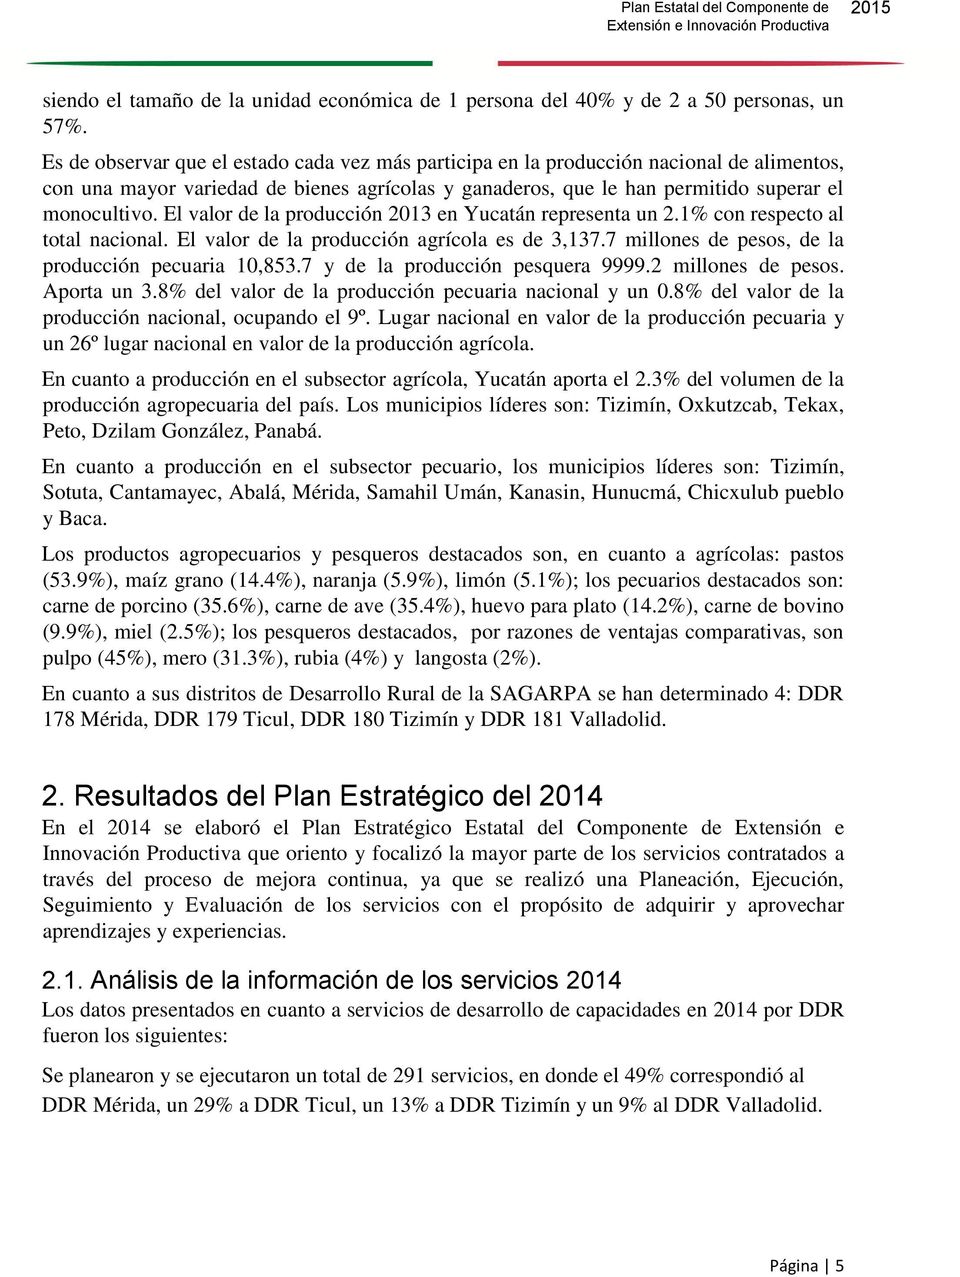 El valor de la producción 2013 en Yucatán representa un 2.1% con respecto al total nacional. El valor de la producción agrícola es de 3,137.7 millones de pesos, de la producción pecuaria 10,853.